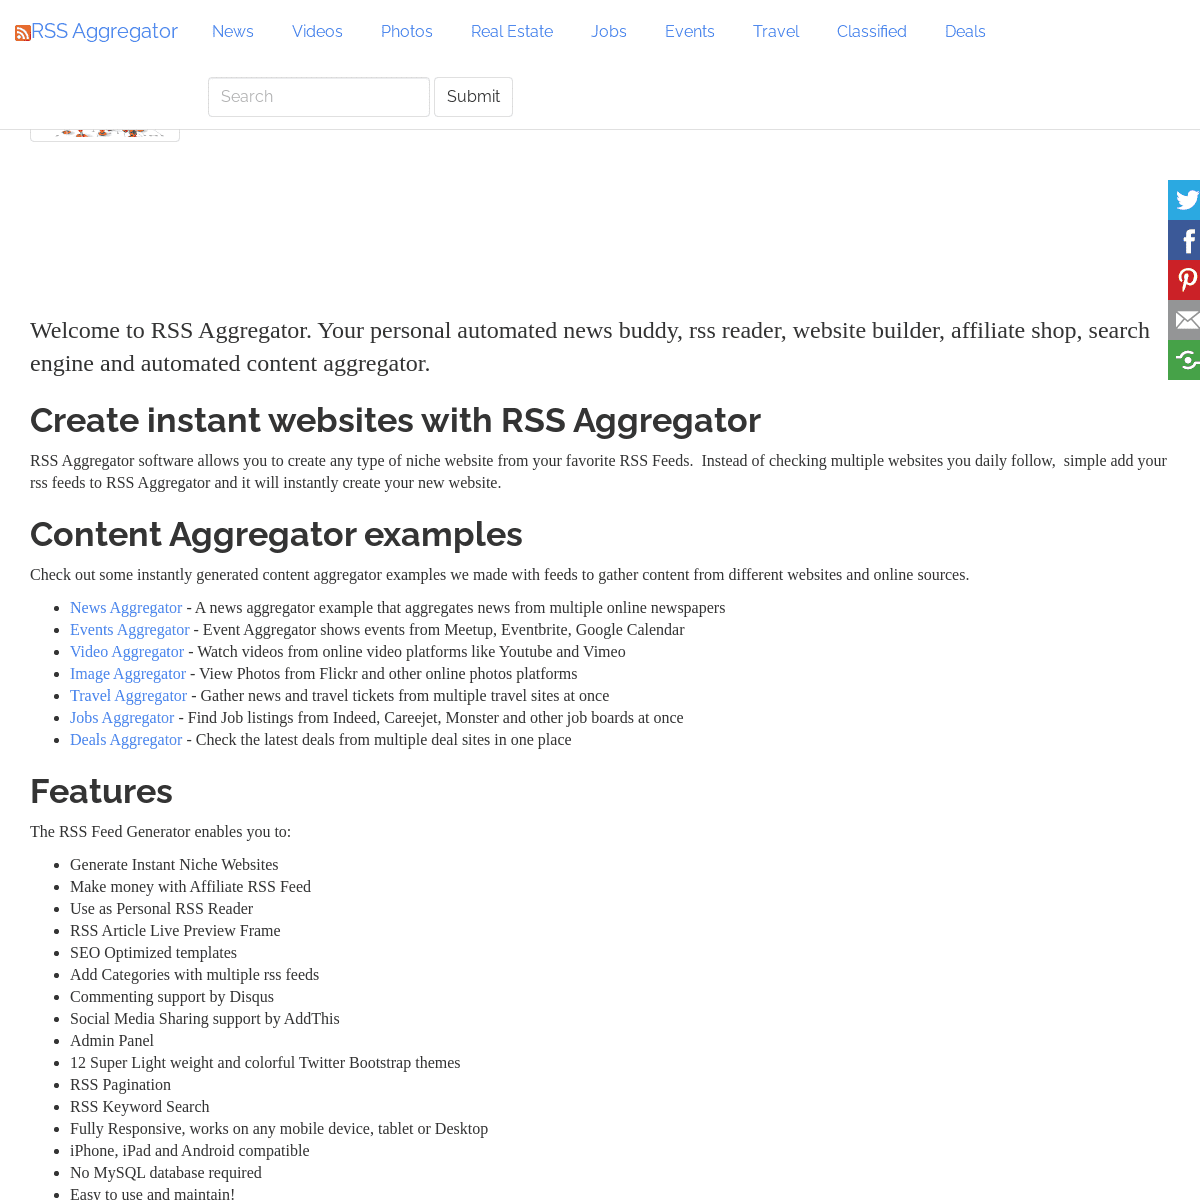 A complete backup of https://rssaggregator.com